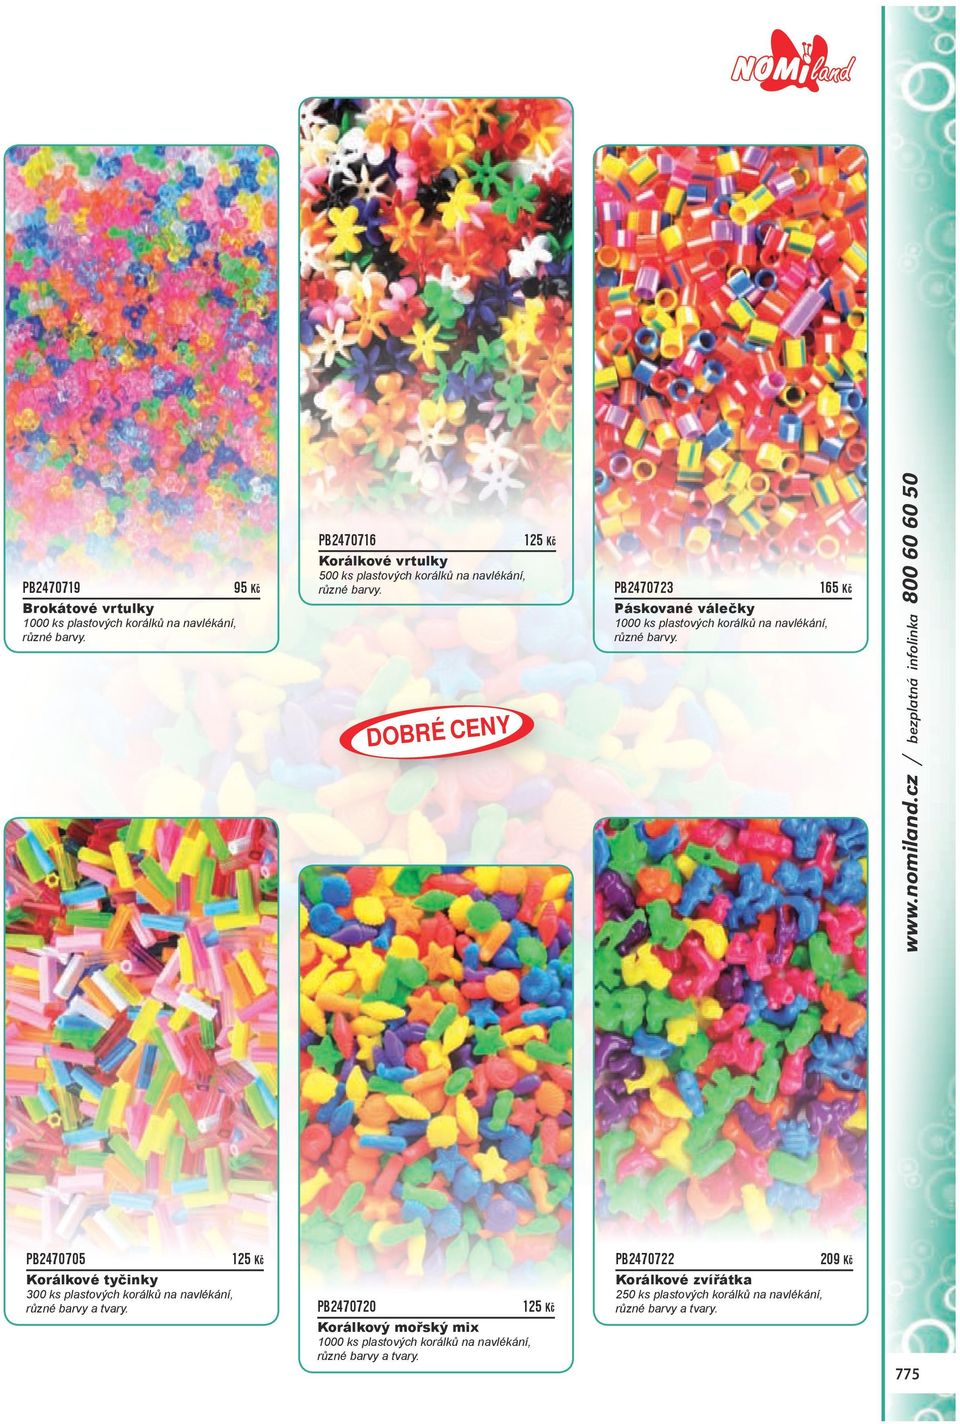 dobré CENY PB2470723 165 Kč Páskované válečky 1000 ks plastových korálků na navlékání, různé barvy. www.nomiland.